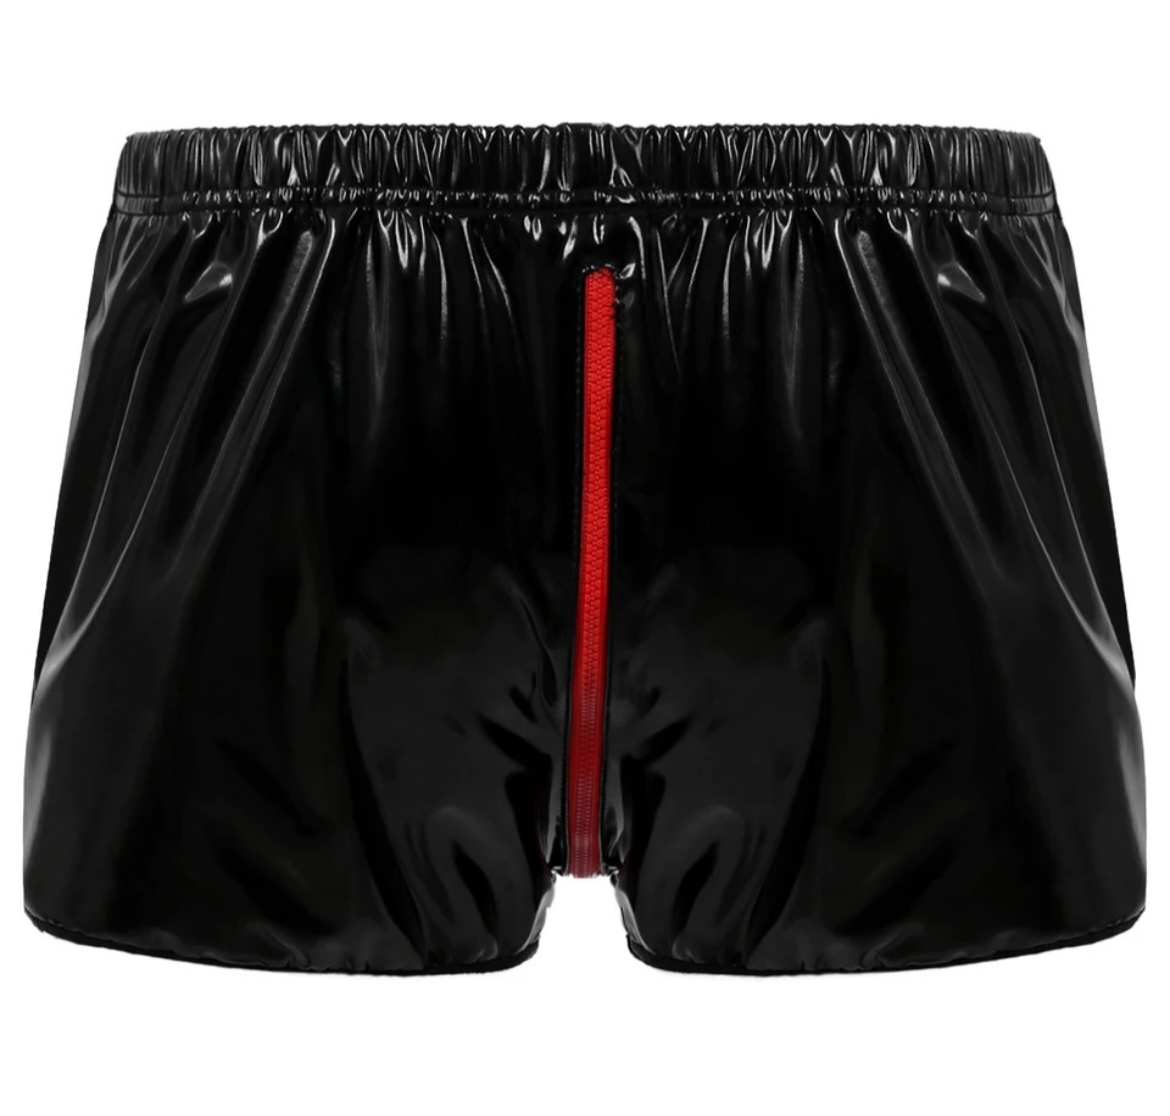 Upptäck Dickfashions sköna shorts, sexiga och bekväma shorts i gummisyntet med röd dragkedja både fram och bak